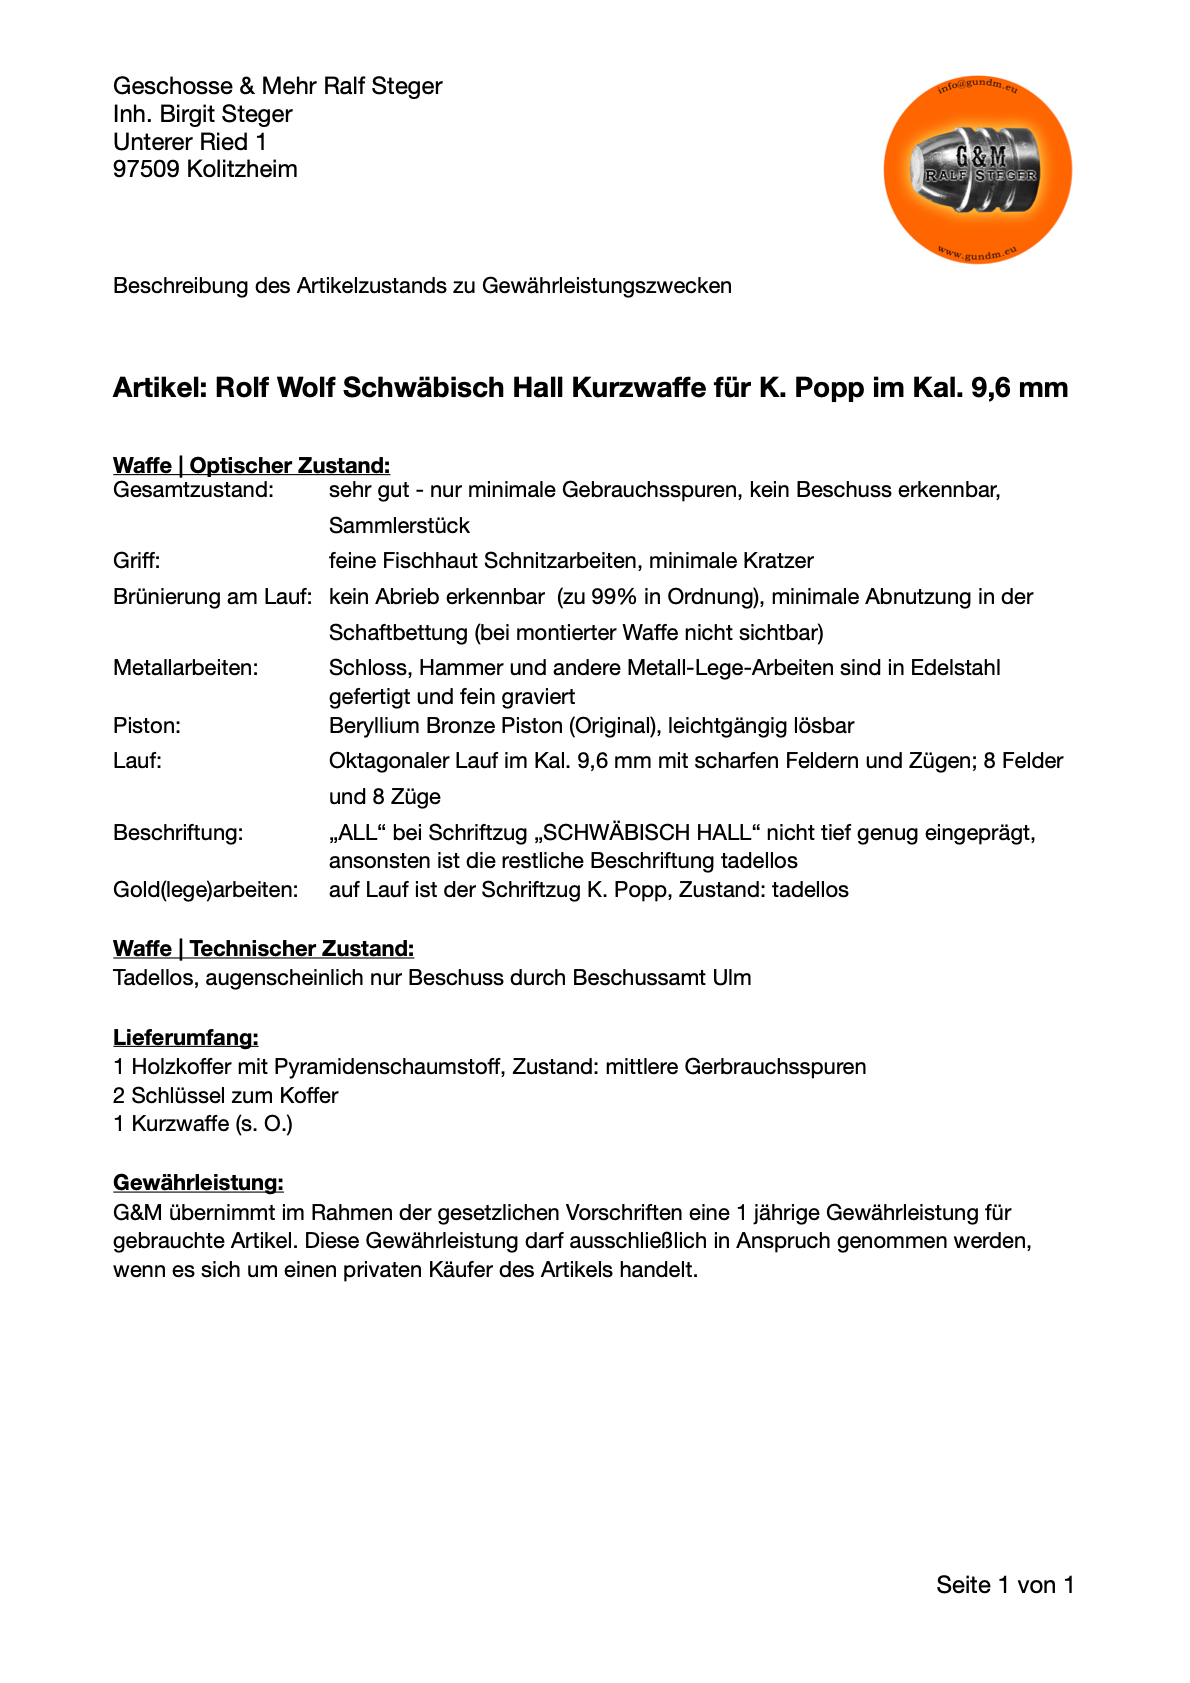 Rolf Wolf | Kurzwaffe in Le Page-Stil | Kal. .38 | Minimale Gebrauchsspuren